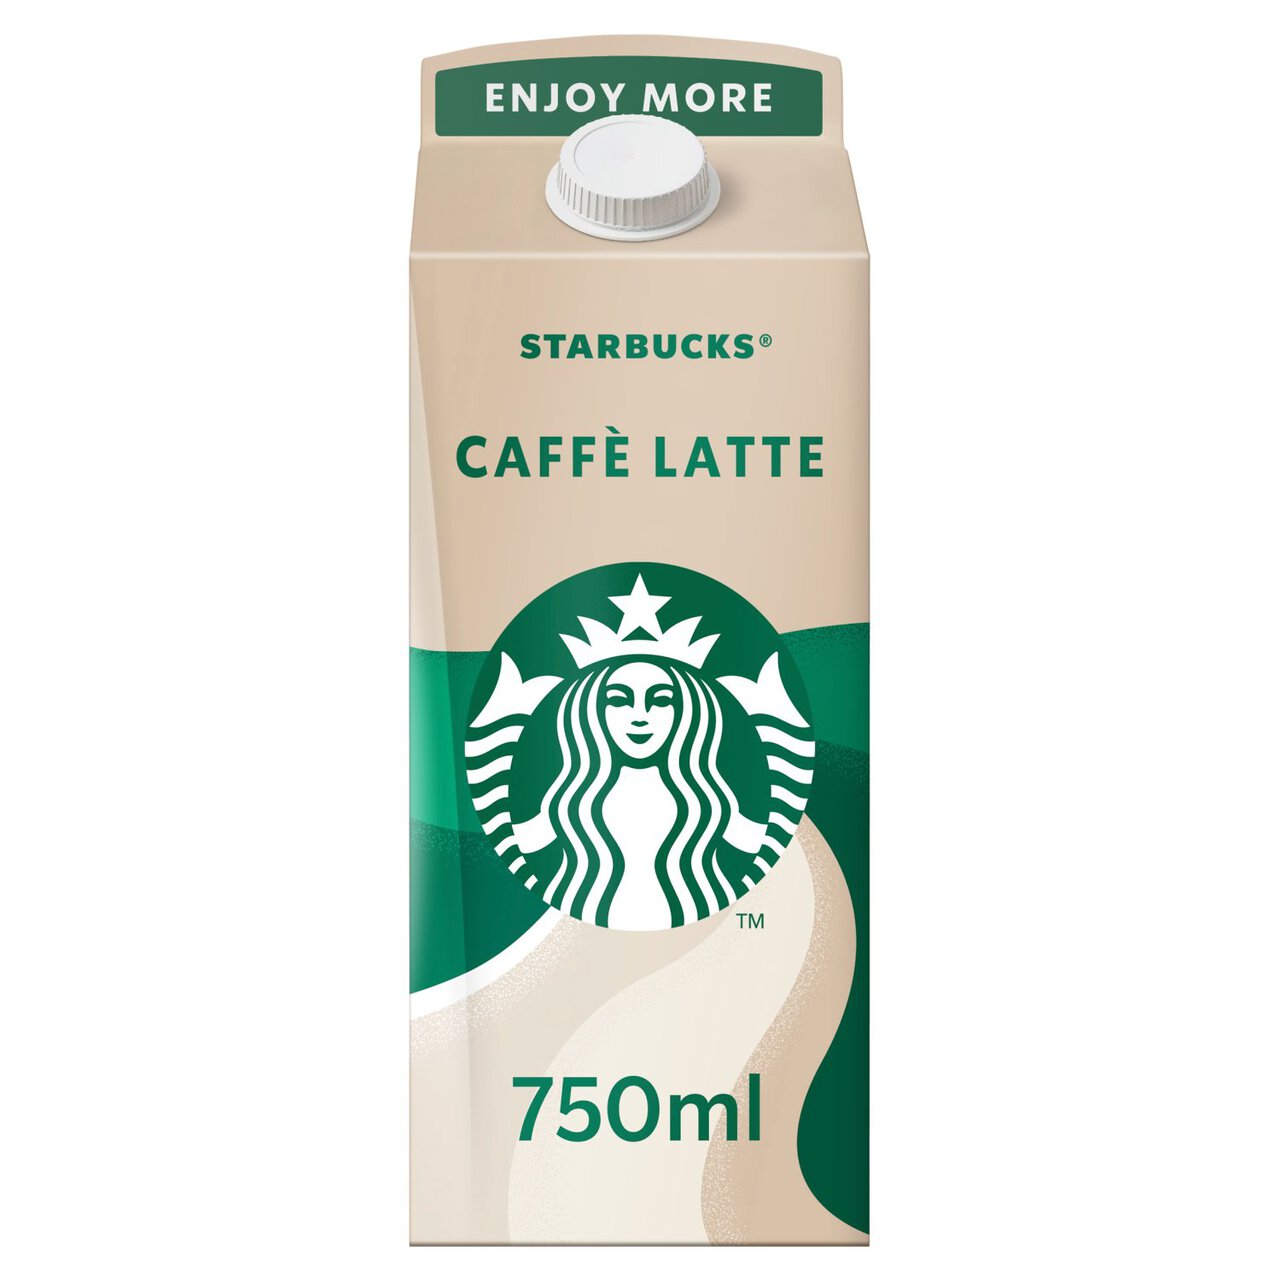 Starbucks Multiserve Caffe Latte Iced Coffee 750ml